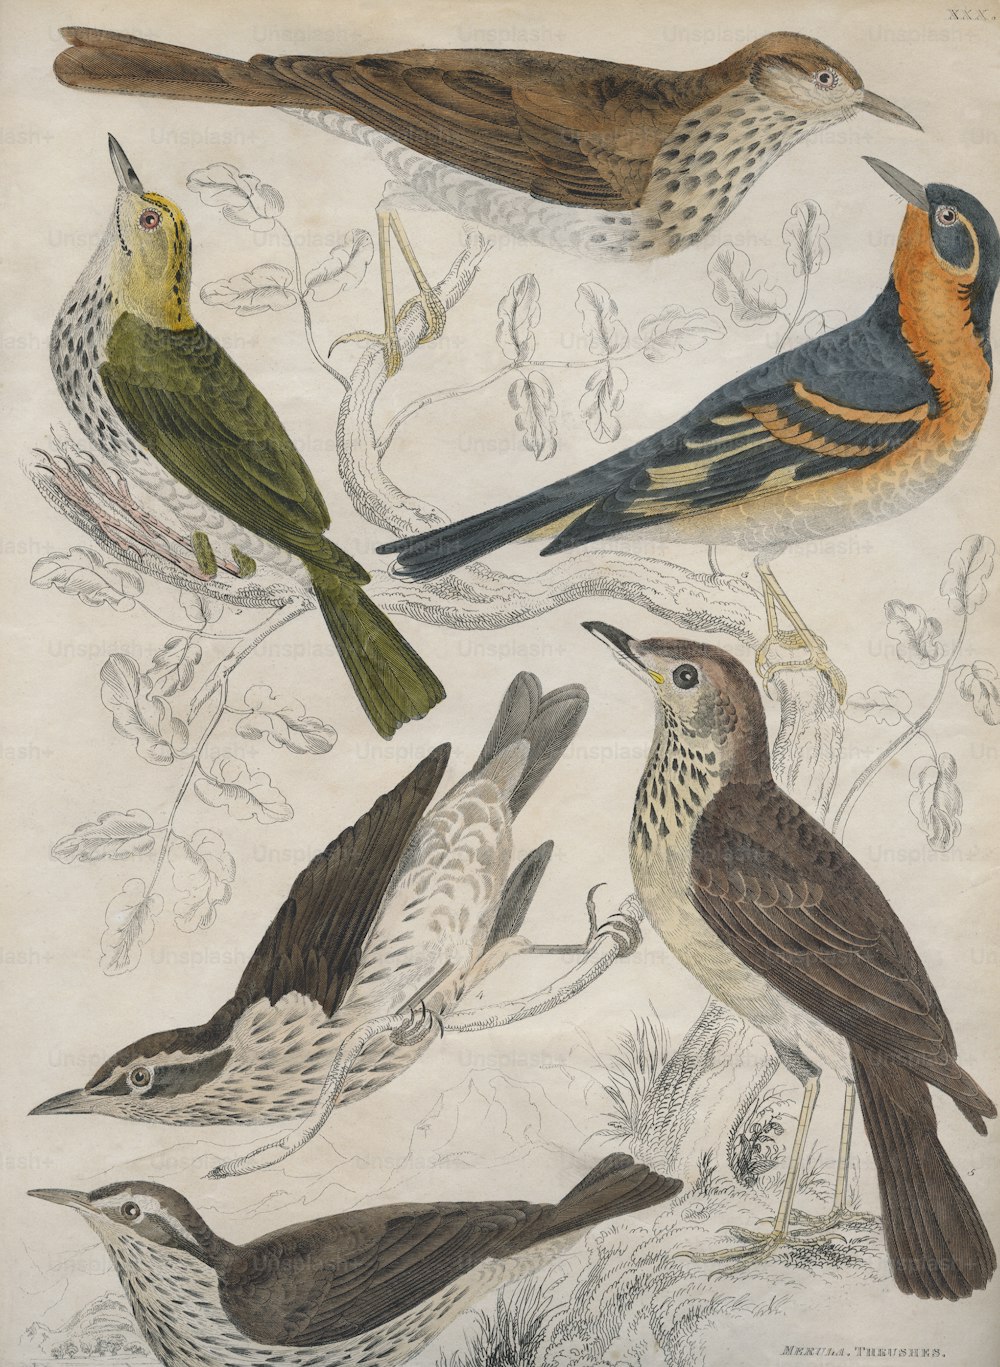 Vários sapinhos, por volta de 1850. No sentido horário a partir do topo, o Pequeno Sabiá-Tawny (merula menor), o Sabiá-de-richardson (Richardsonii), o Sabiá-de-Cabra-do-Céu (Turdus Wilsonii), o Sabiá-da-água (aquatica), o Sabiá-de-audubon (Ludoviciana) e o Sabiá-de-coroa-dourada (auricapilla). Gravado por John Miller em homenagem a A. Wilson e ao Capitão Brown. (Foto: Hulton Archive/Getty Images)